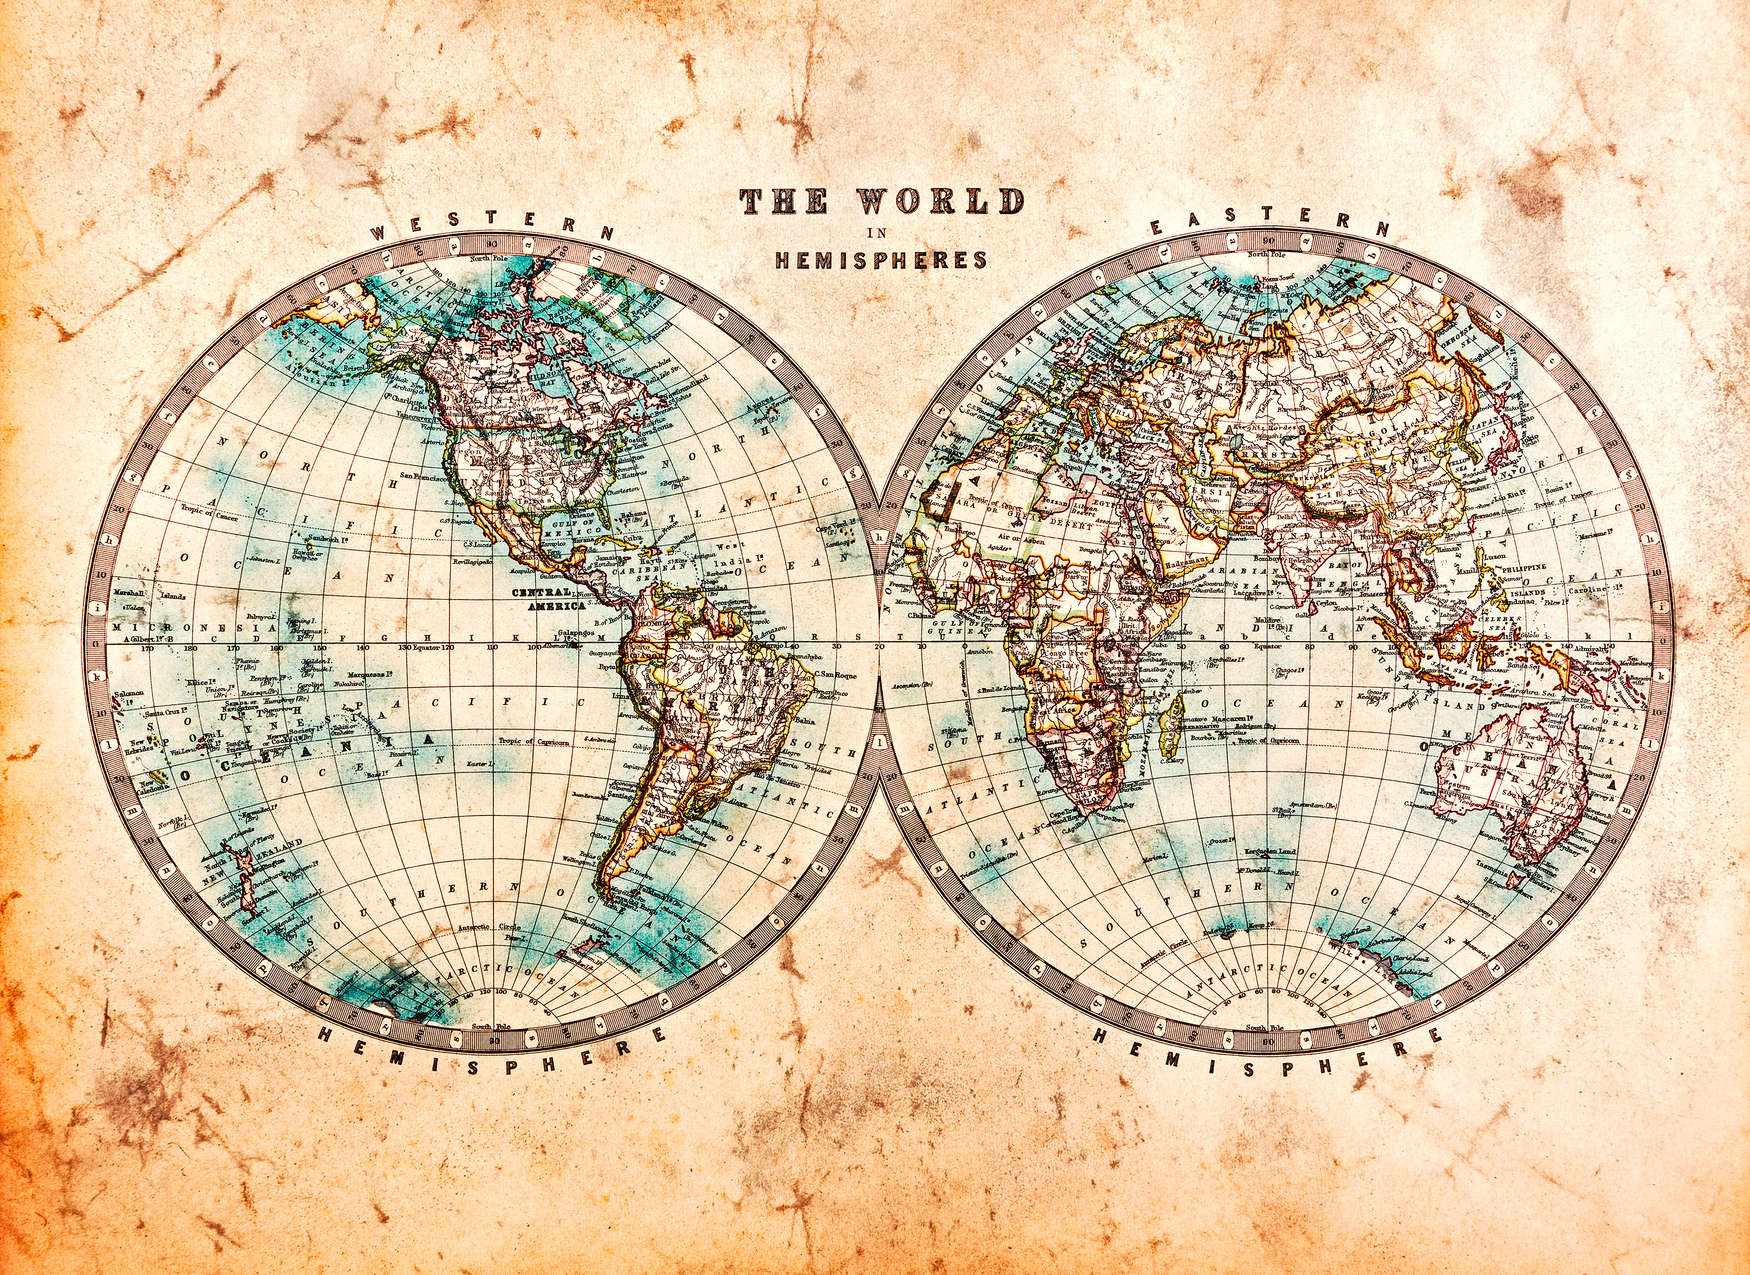             Mapa del mundo vintage en hemisferios - marrón, beige, azul
        